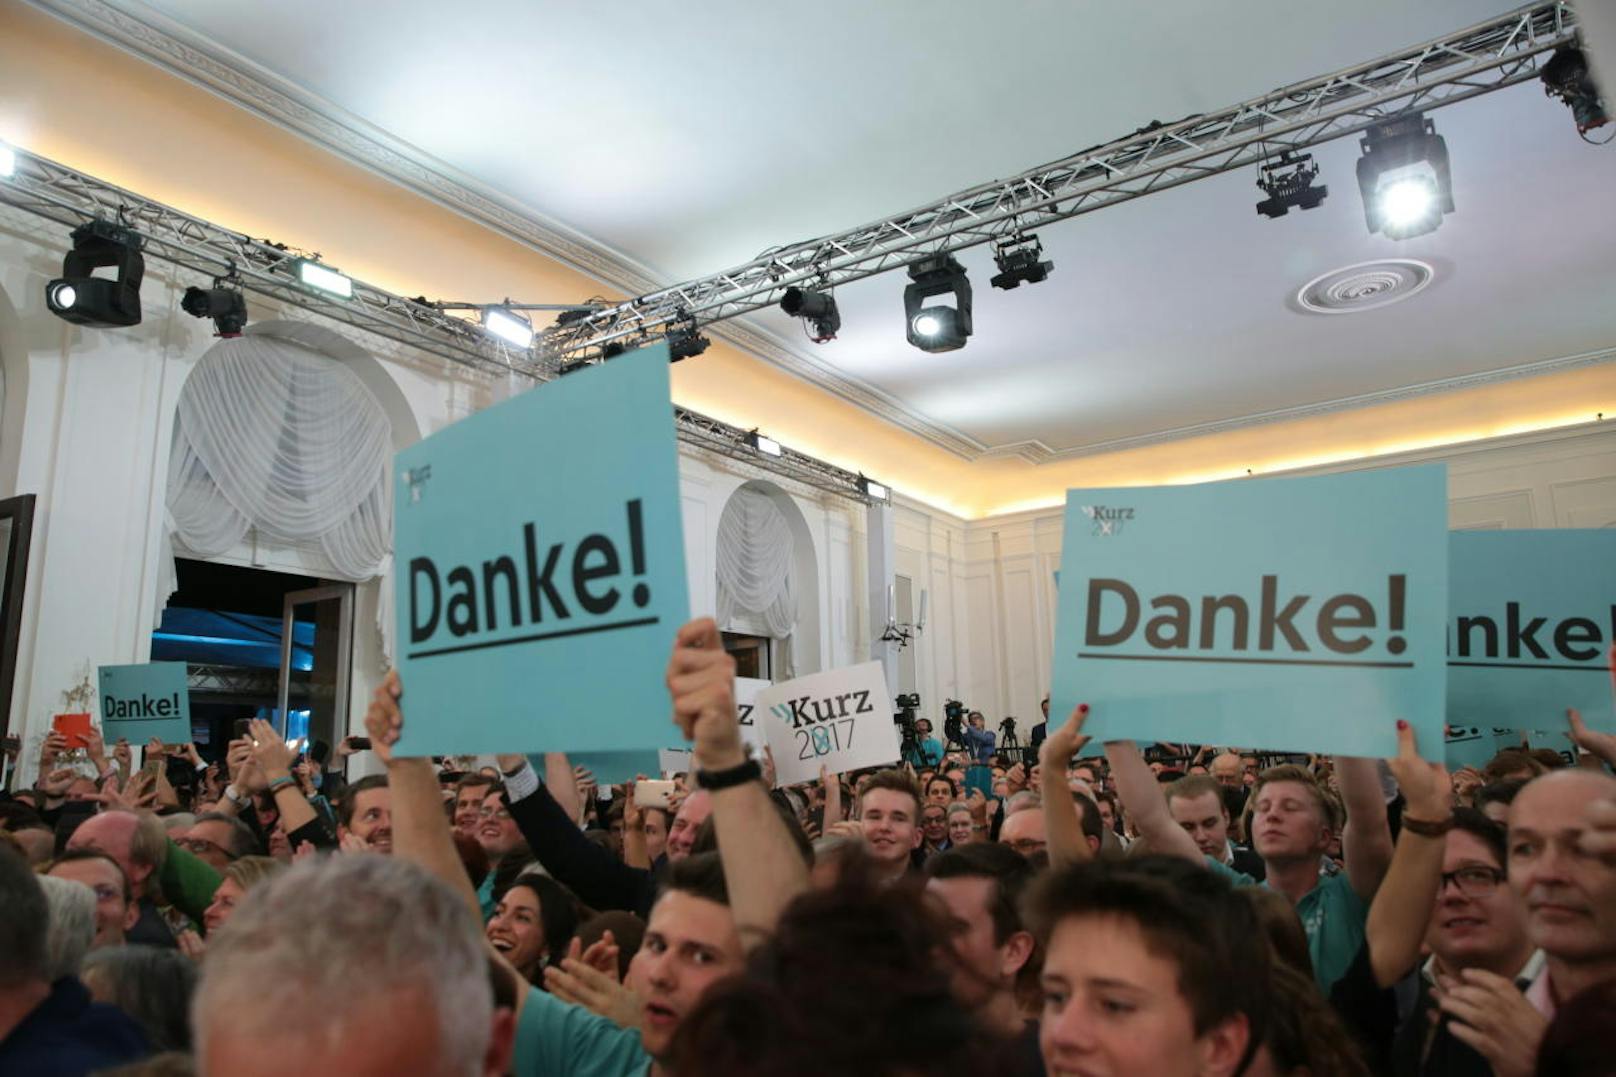 Riesenjubel bei der ÖVP und ihrem siegreichen Spitzenkandidaten Sebastian Kurz